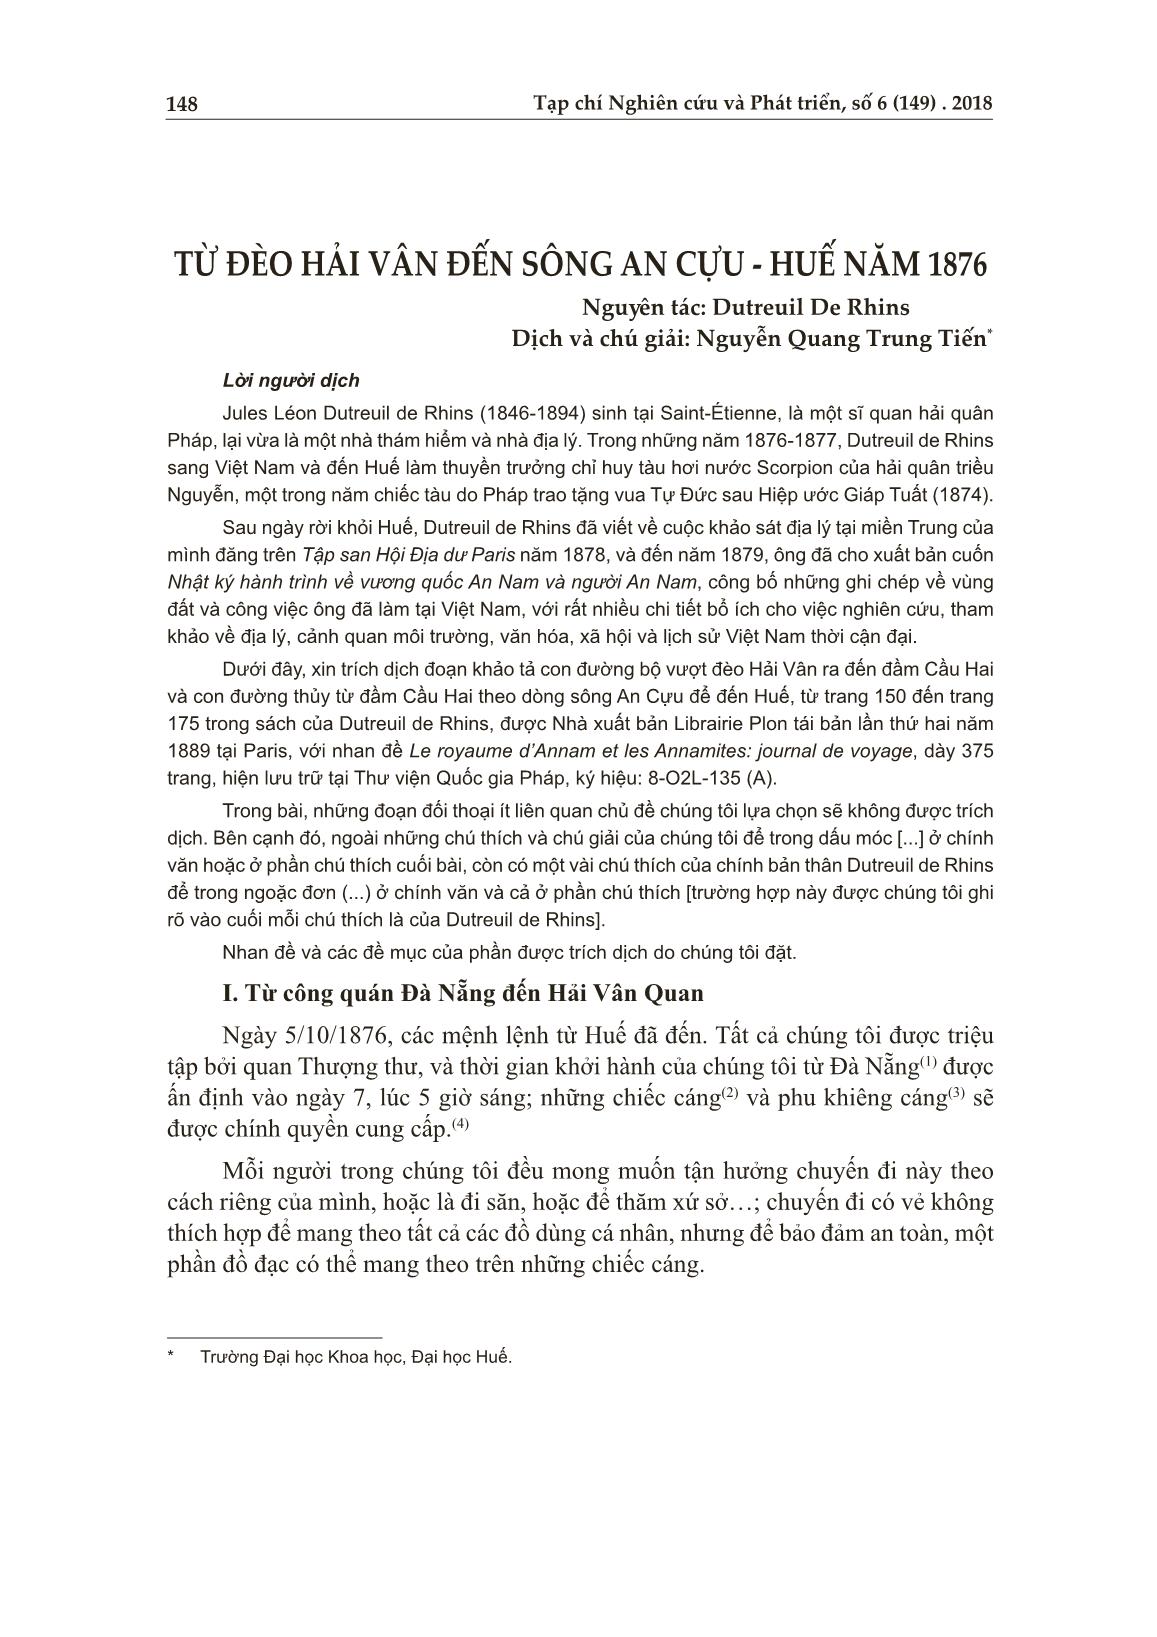 Từ đèo Hải Vân đến sông An Cựu - Huế năm 1876 trang 1